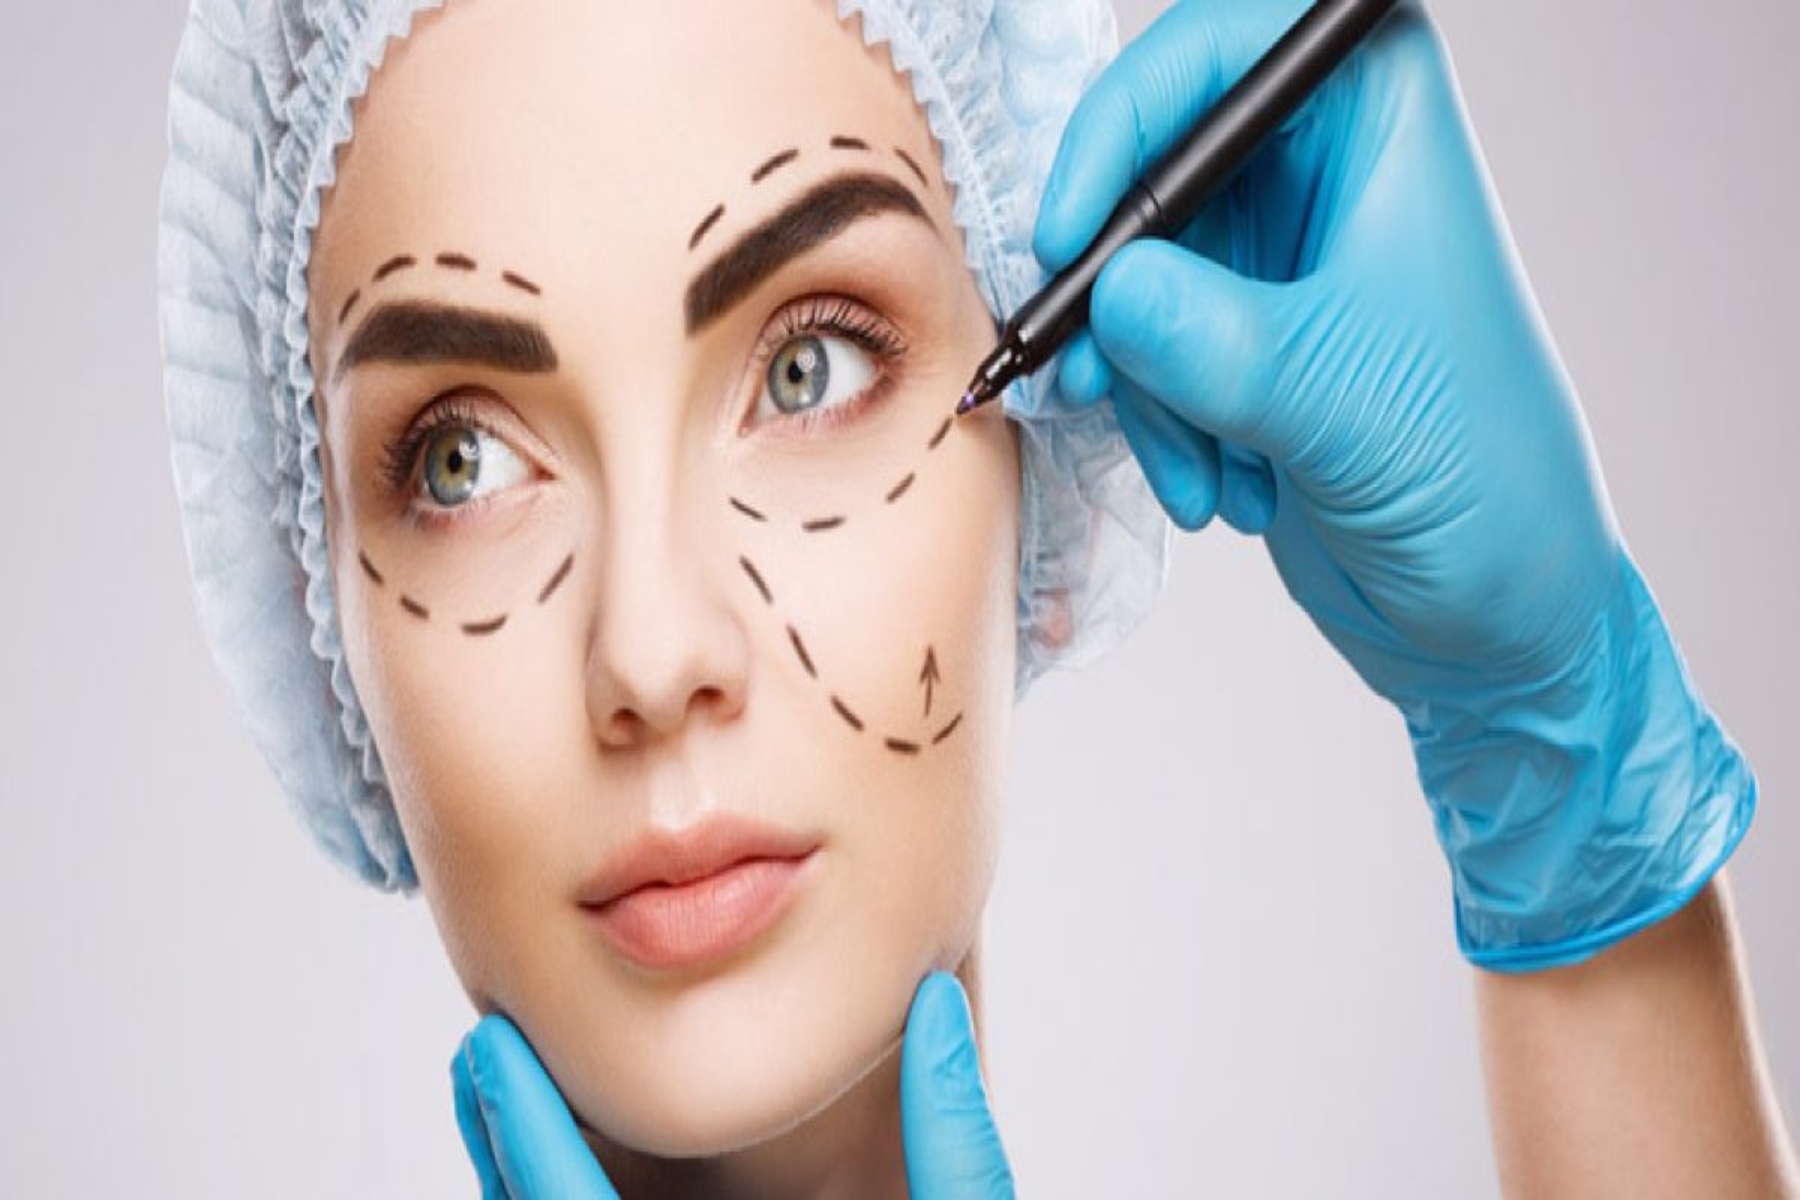 Είδη χειρουργείου: Ποια η διαφορά μεταξύ αισθητικής χειρουργικής και πλαστικής χειρουργικής;